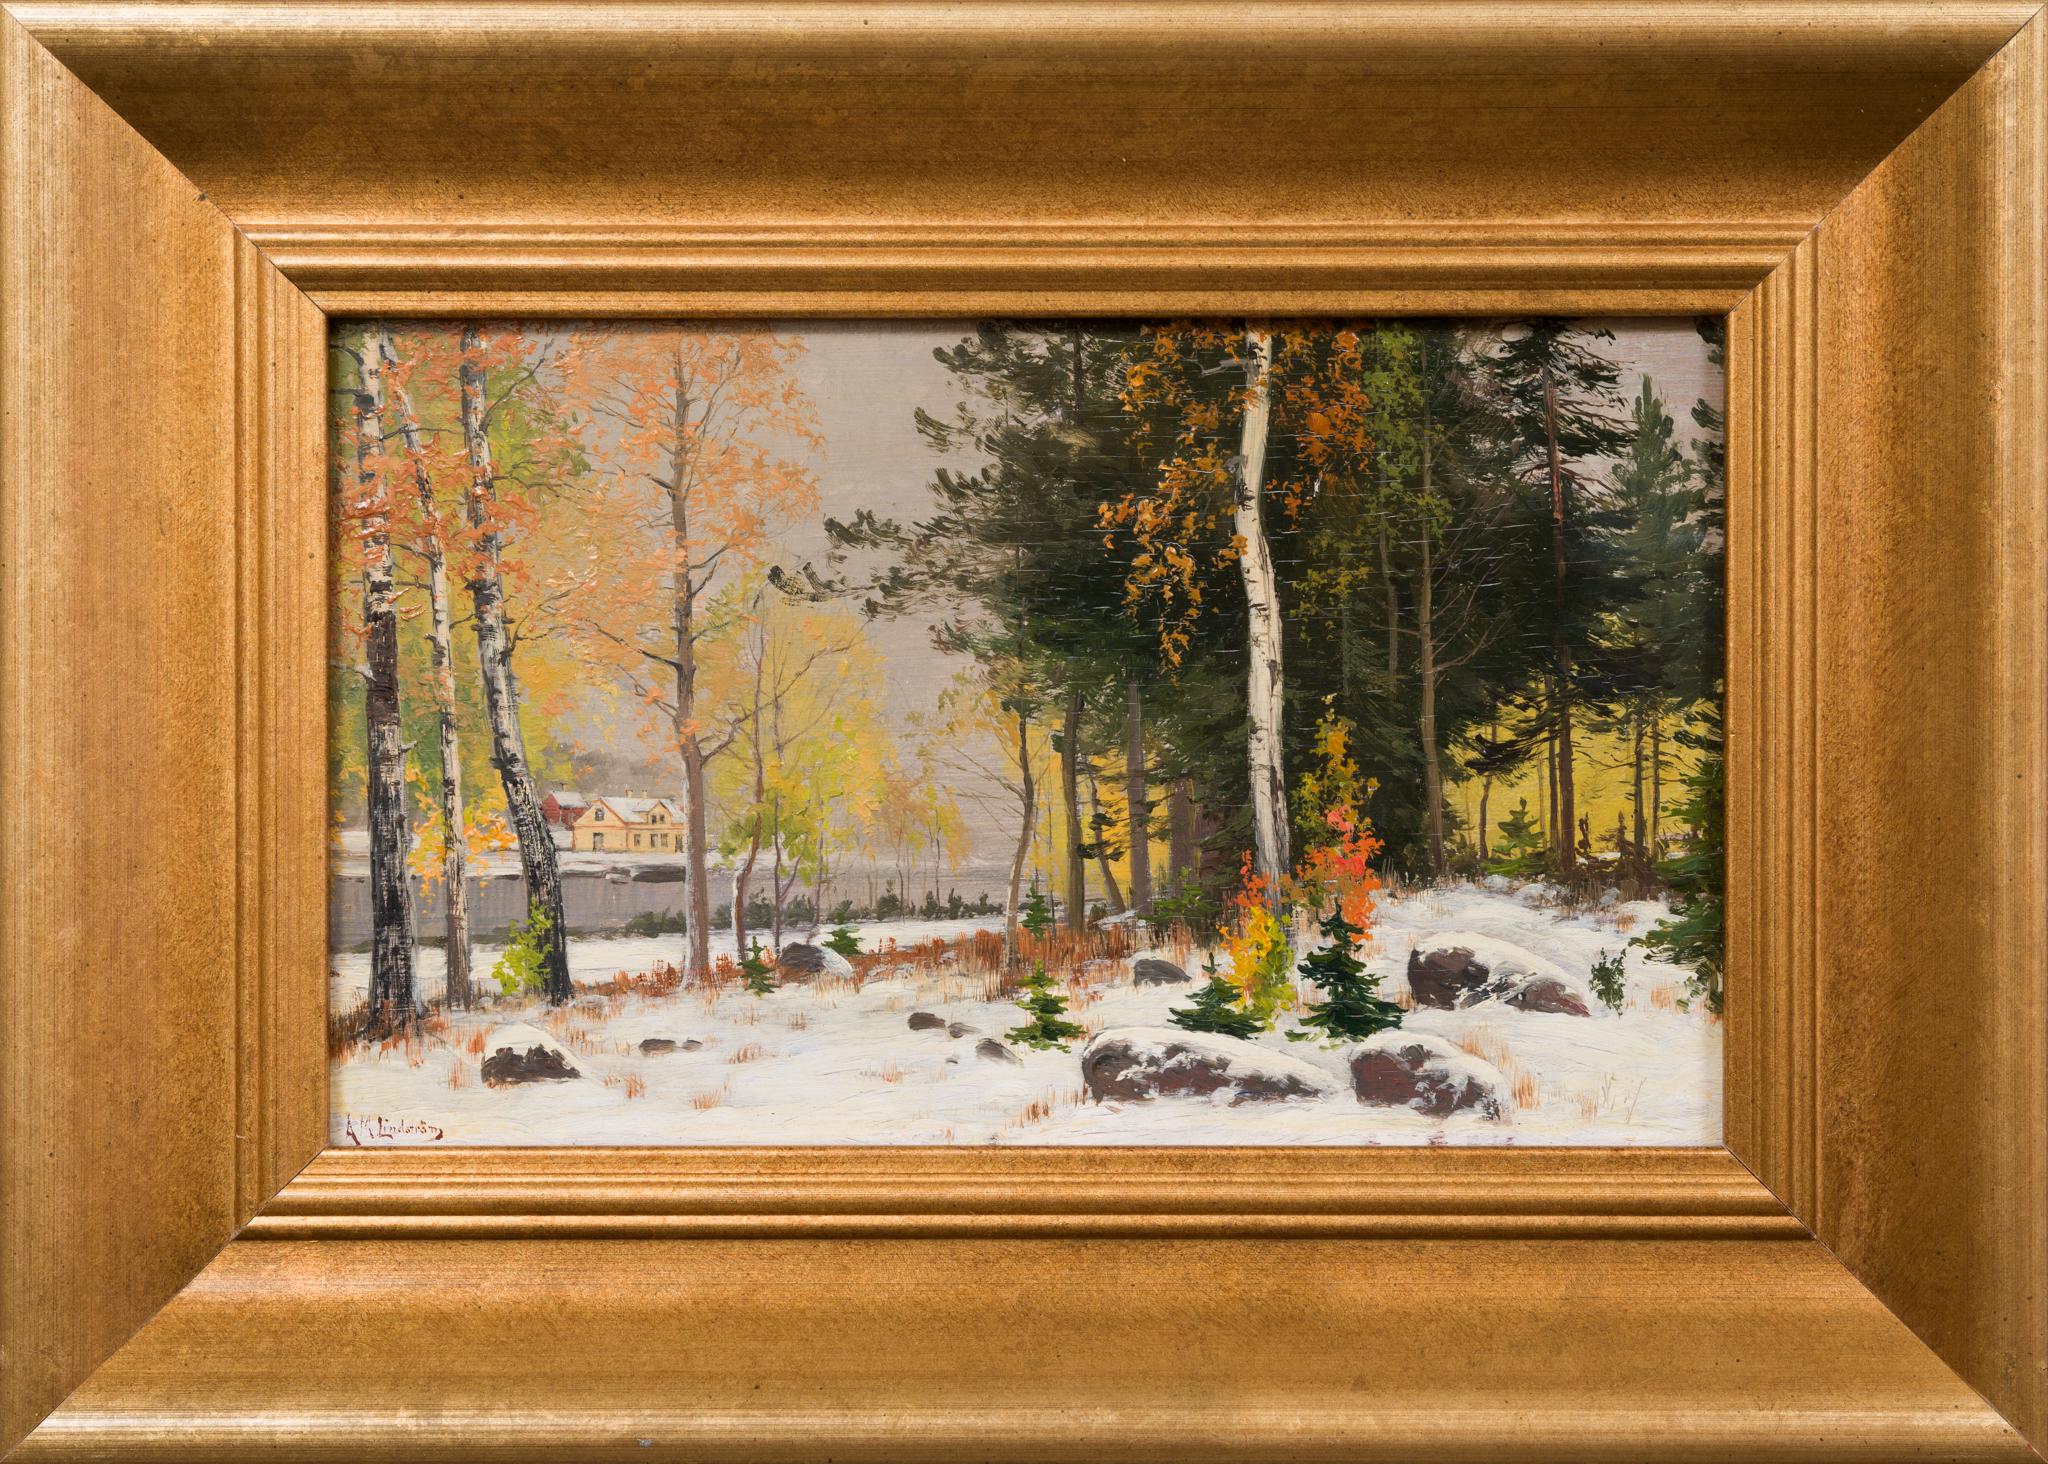 Dans ce charmant tableau intitulé "Première neige", Mauritz Lindström capture le moment fugace où les teintes vibrantes de l'automne rencontrent la douce étreinte de l'hiver. Connu pour ses paysages atmosphériques, Lindström est né le 26 avril 1849